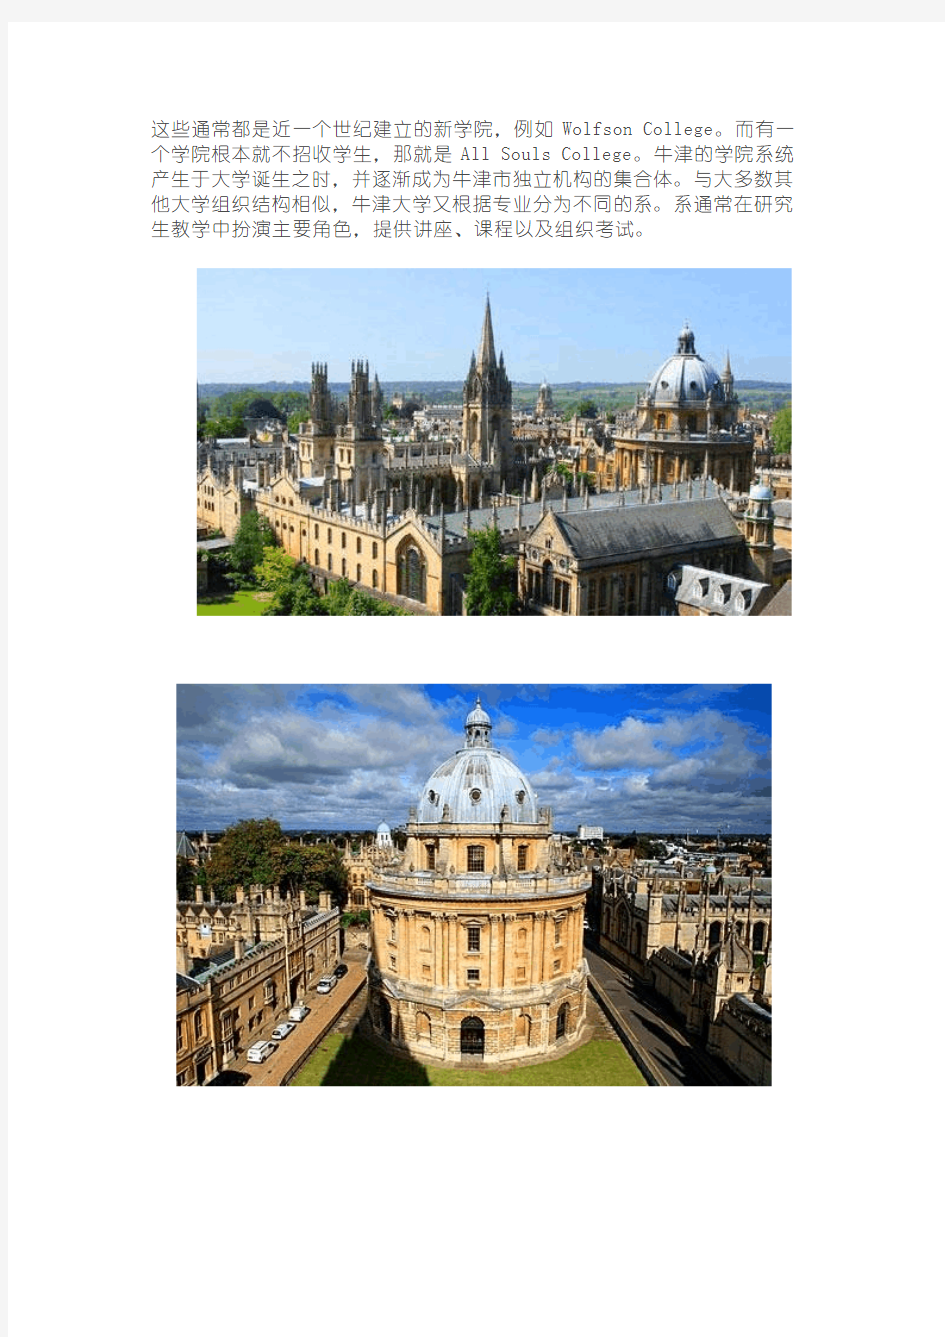 世界著名大学校园景观巡礼之四——牛津大学.